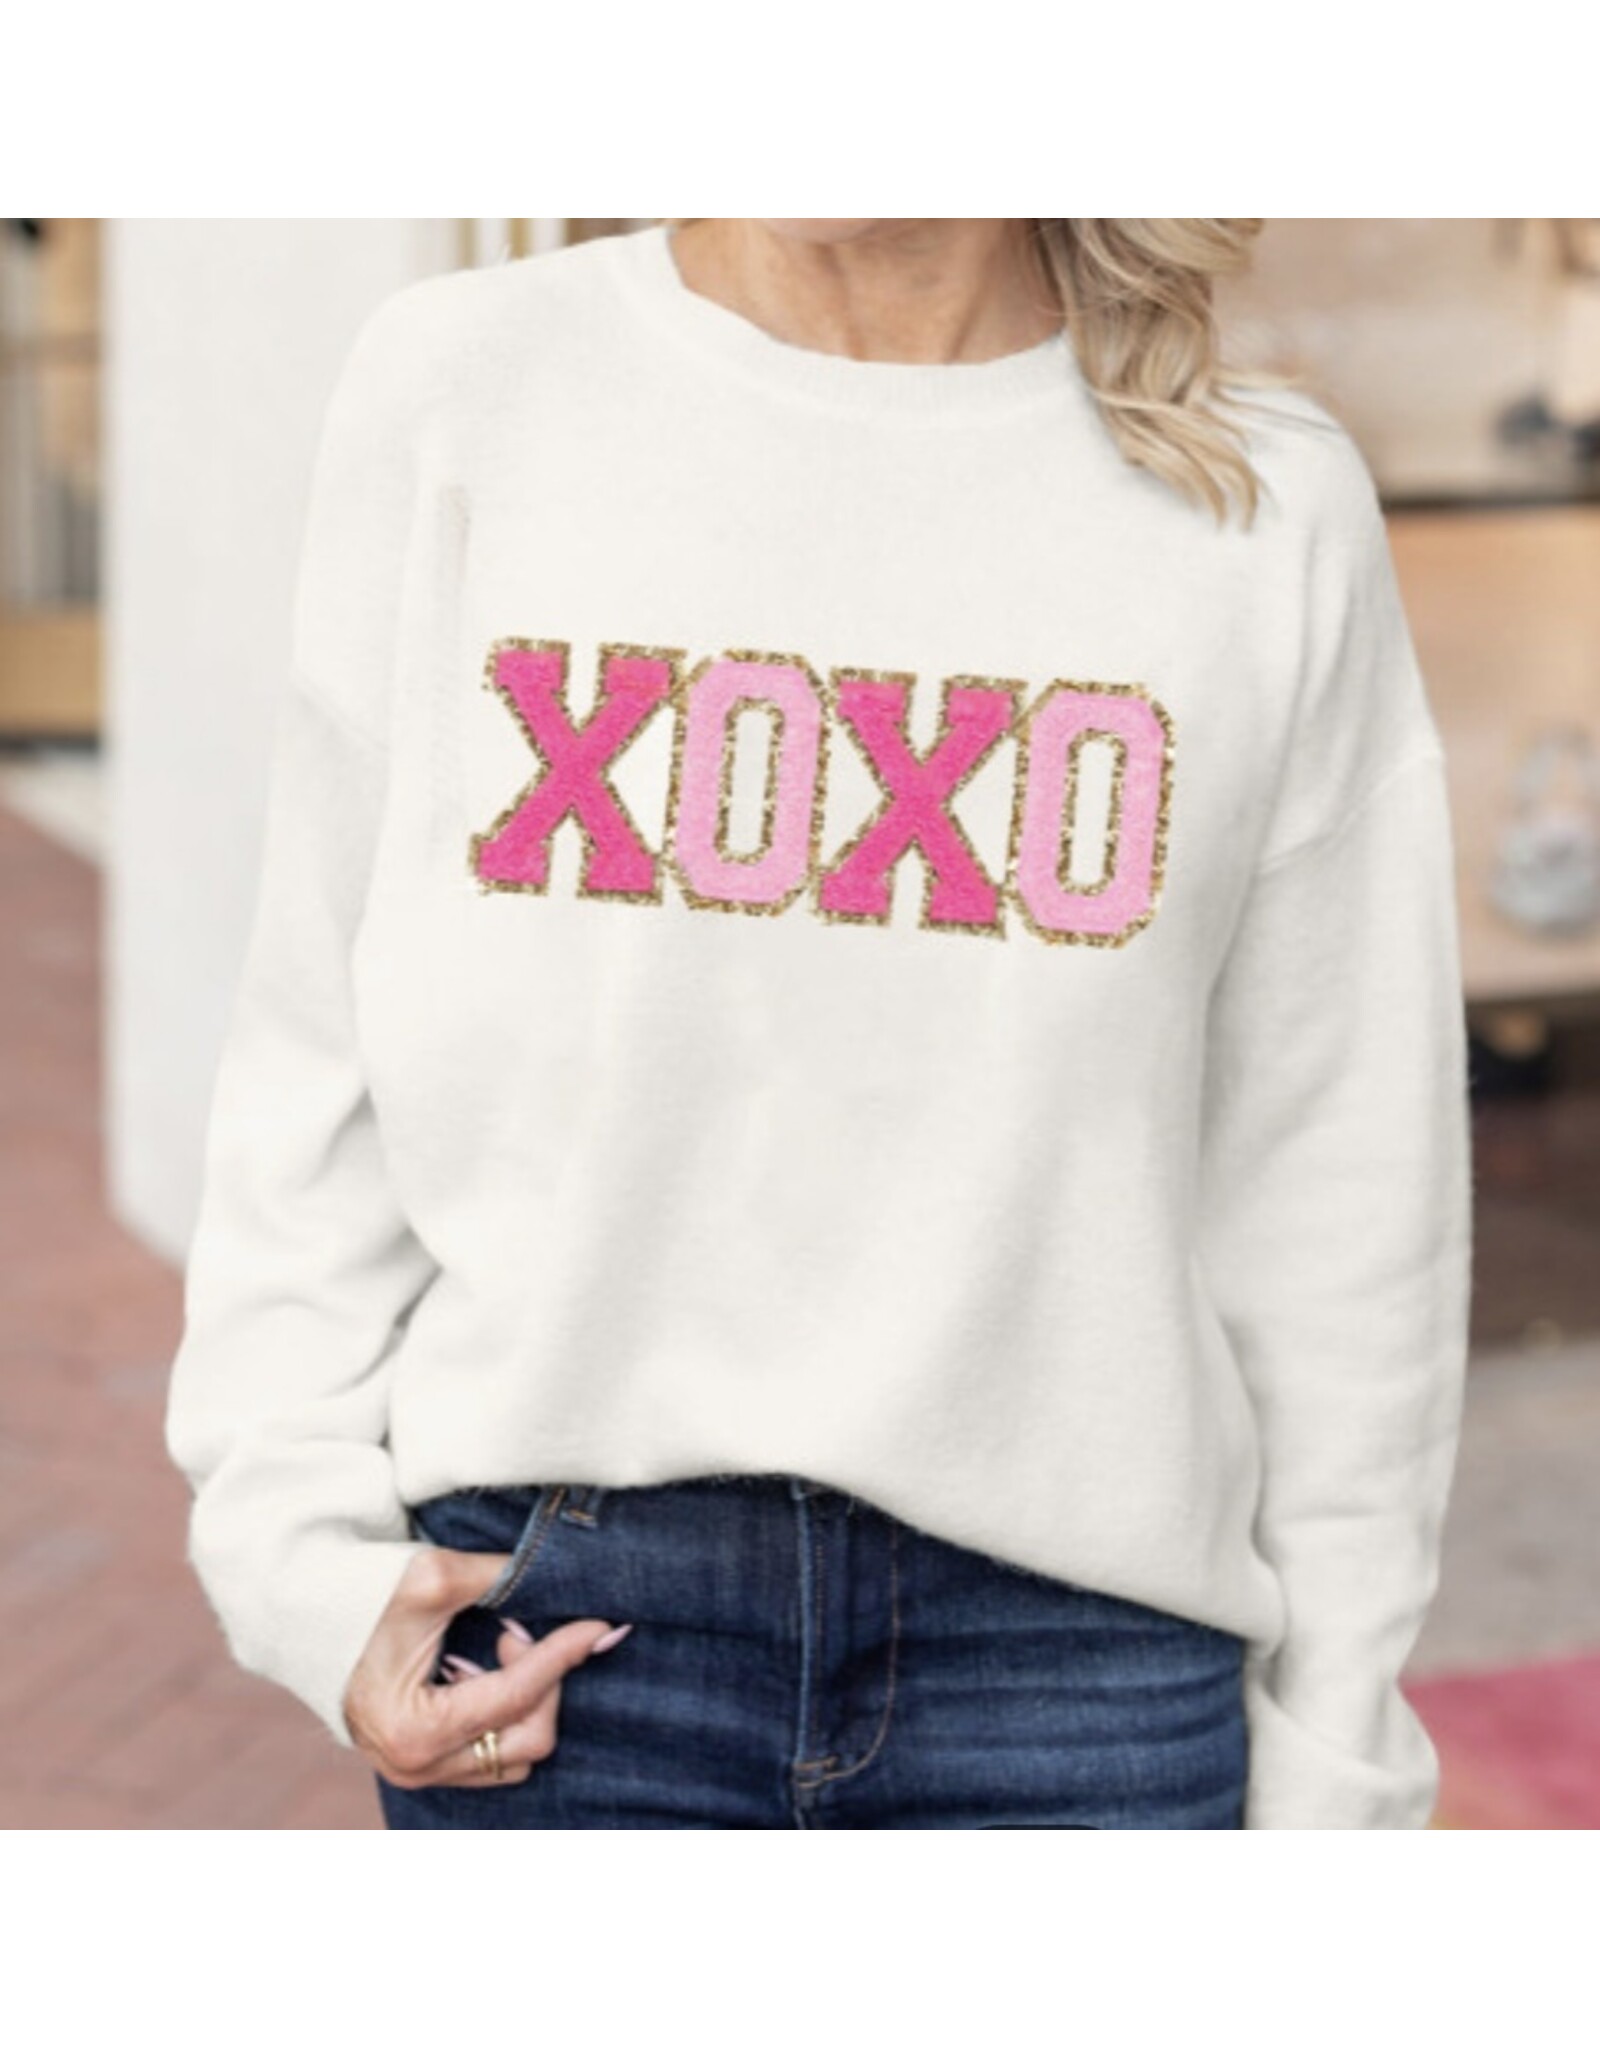 LATA White XOXO Sweater